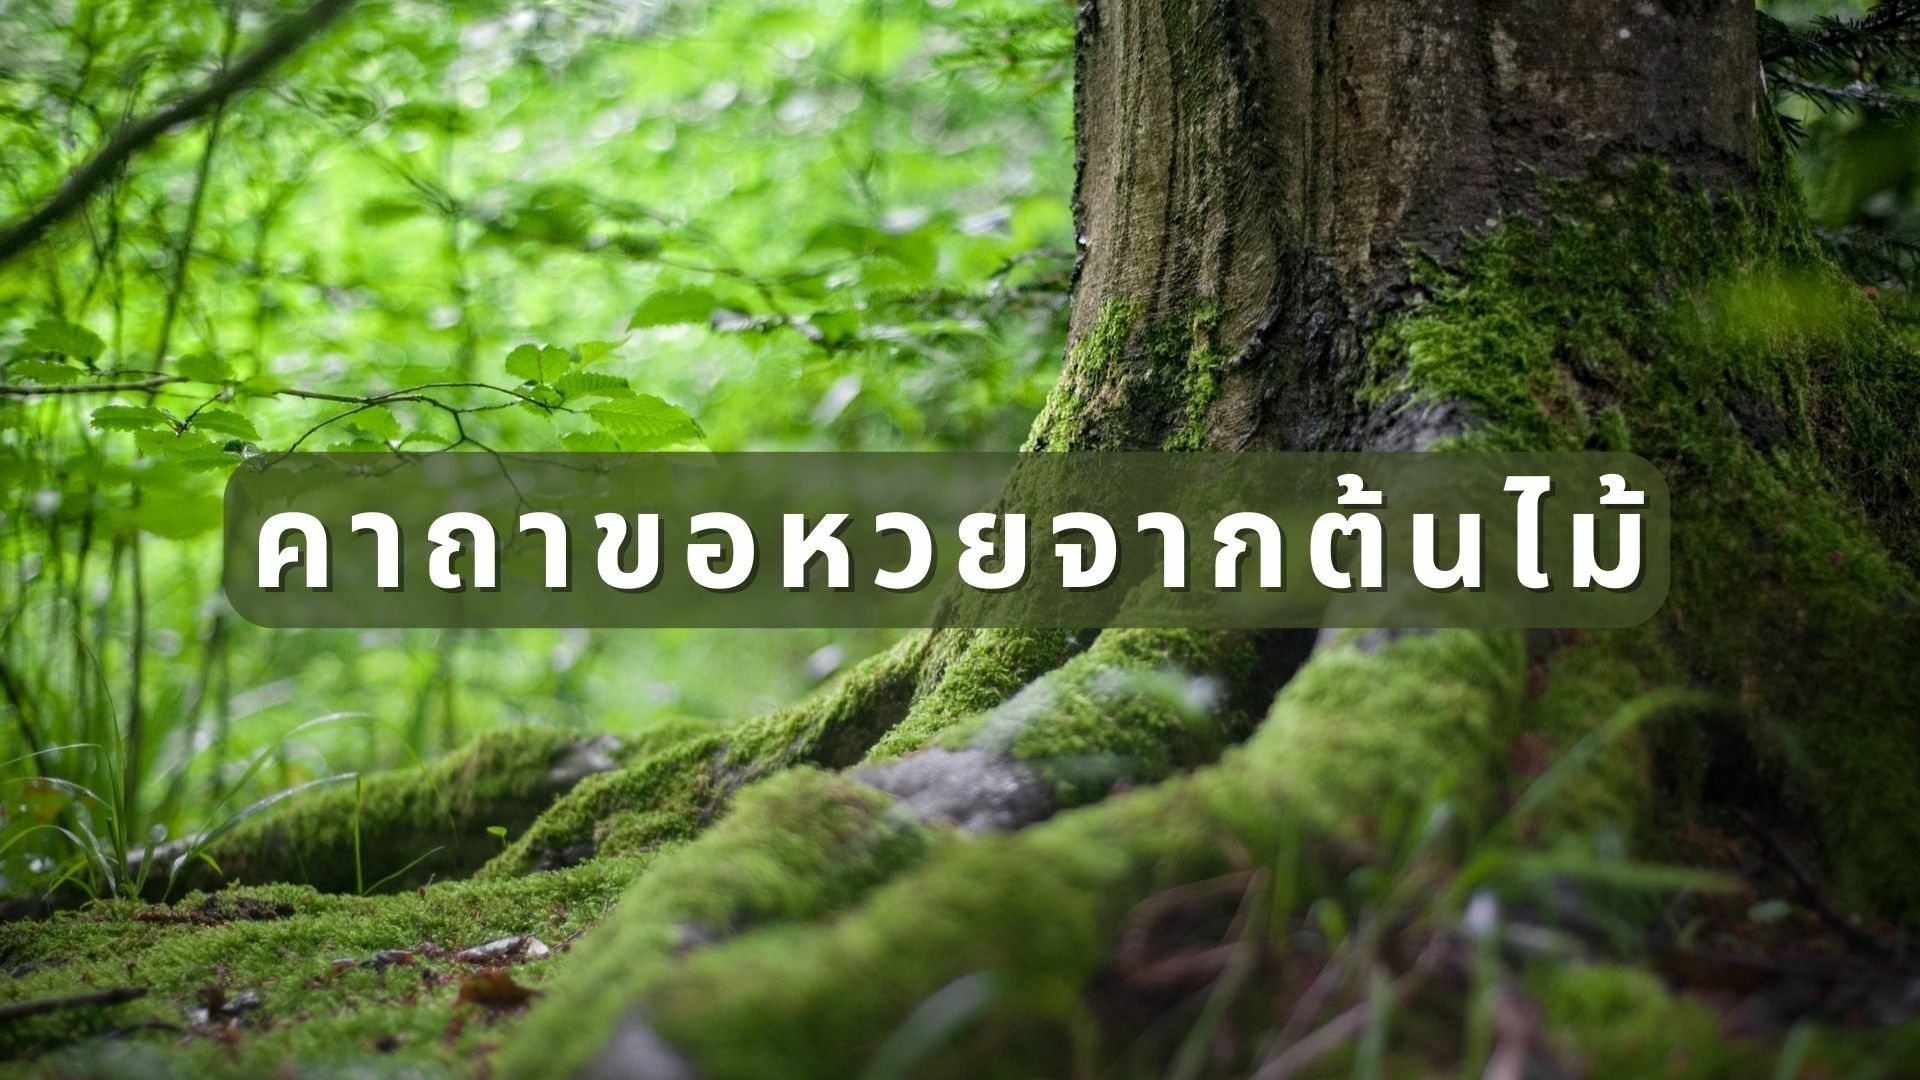 คาถาขอหวยจากต้นไม้ ขอยังไงให้เห็นเลขเด็ดงวดนี้ | Thaiger ข่าวไทย